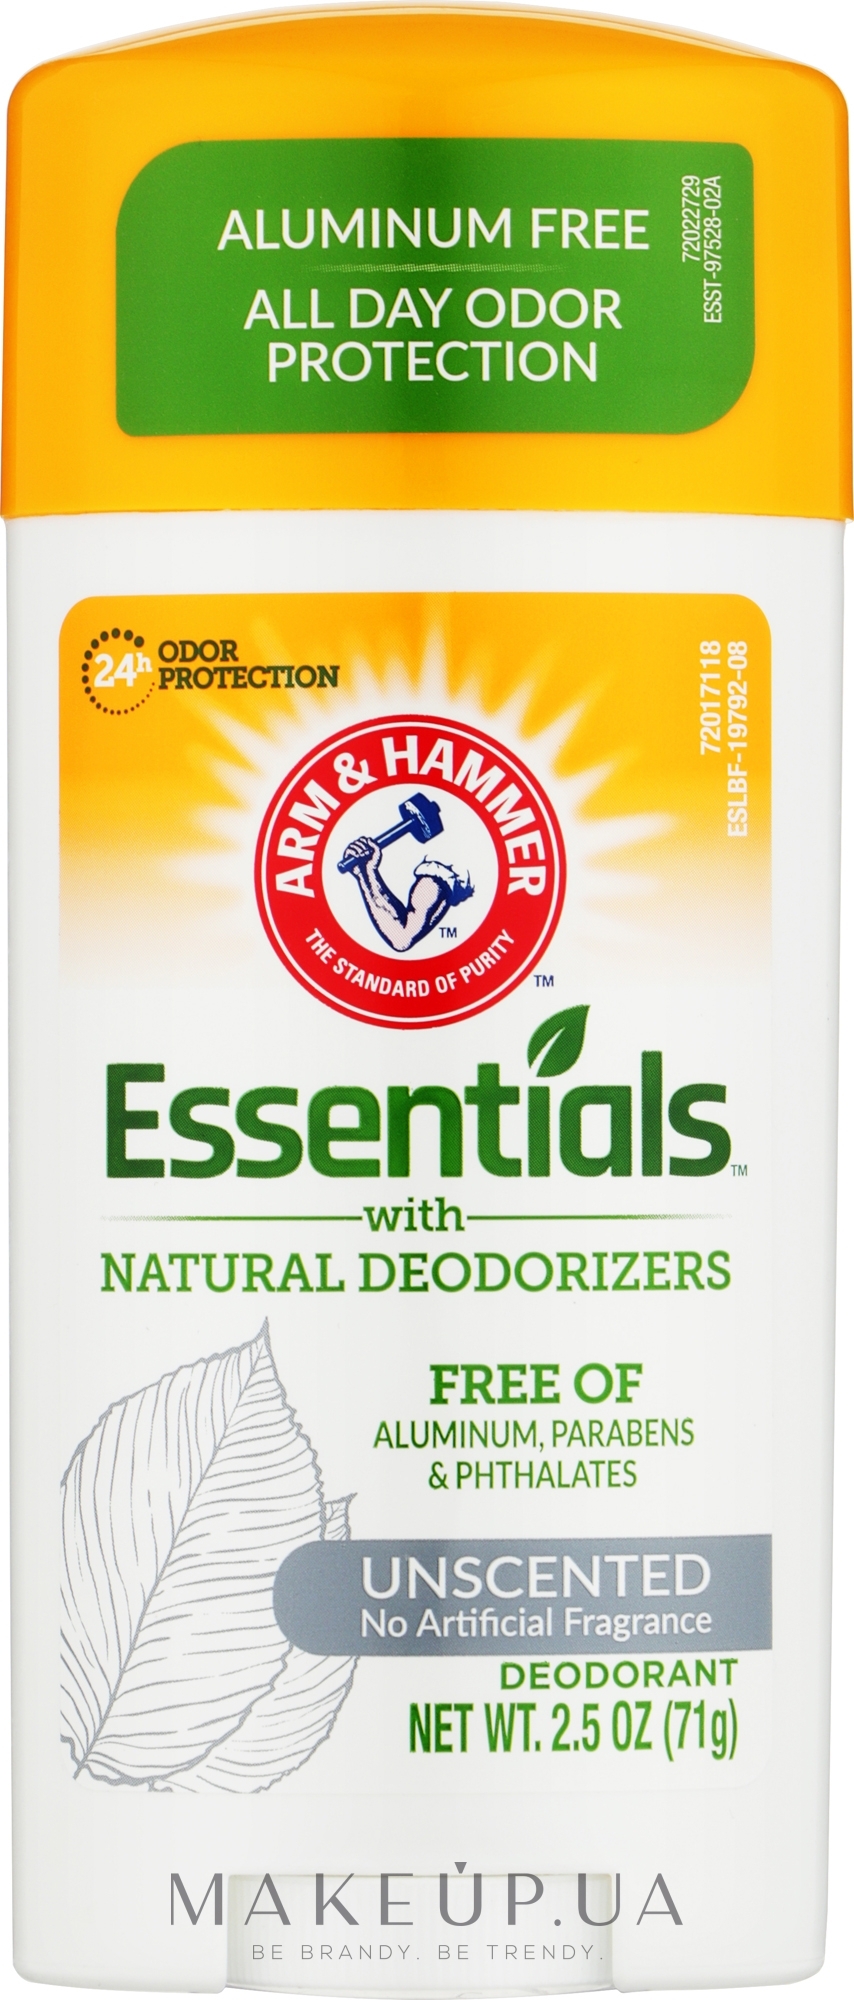 Натуральний дезодорант без запаху, алюмінію, парабенів і фталатів - Arm & Hammer Essentials Natural Deodorant Unscented — фото 71g